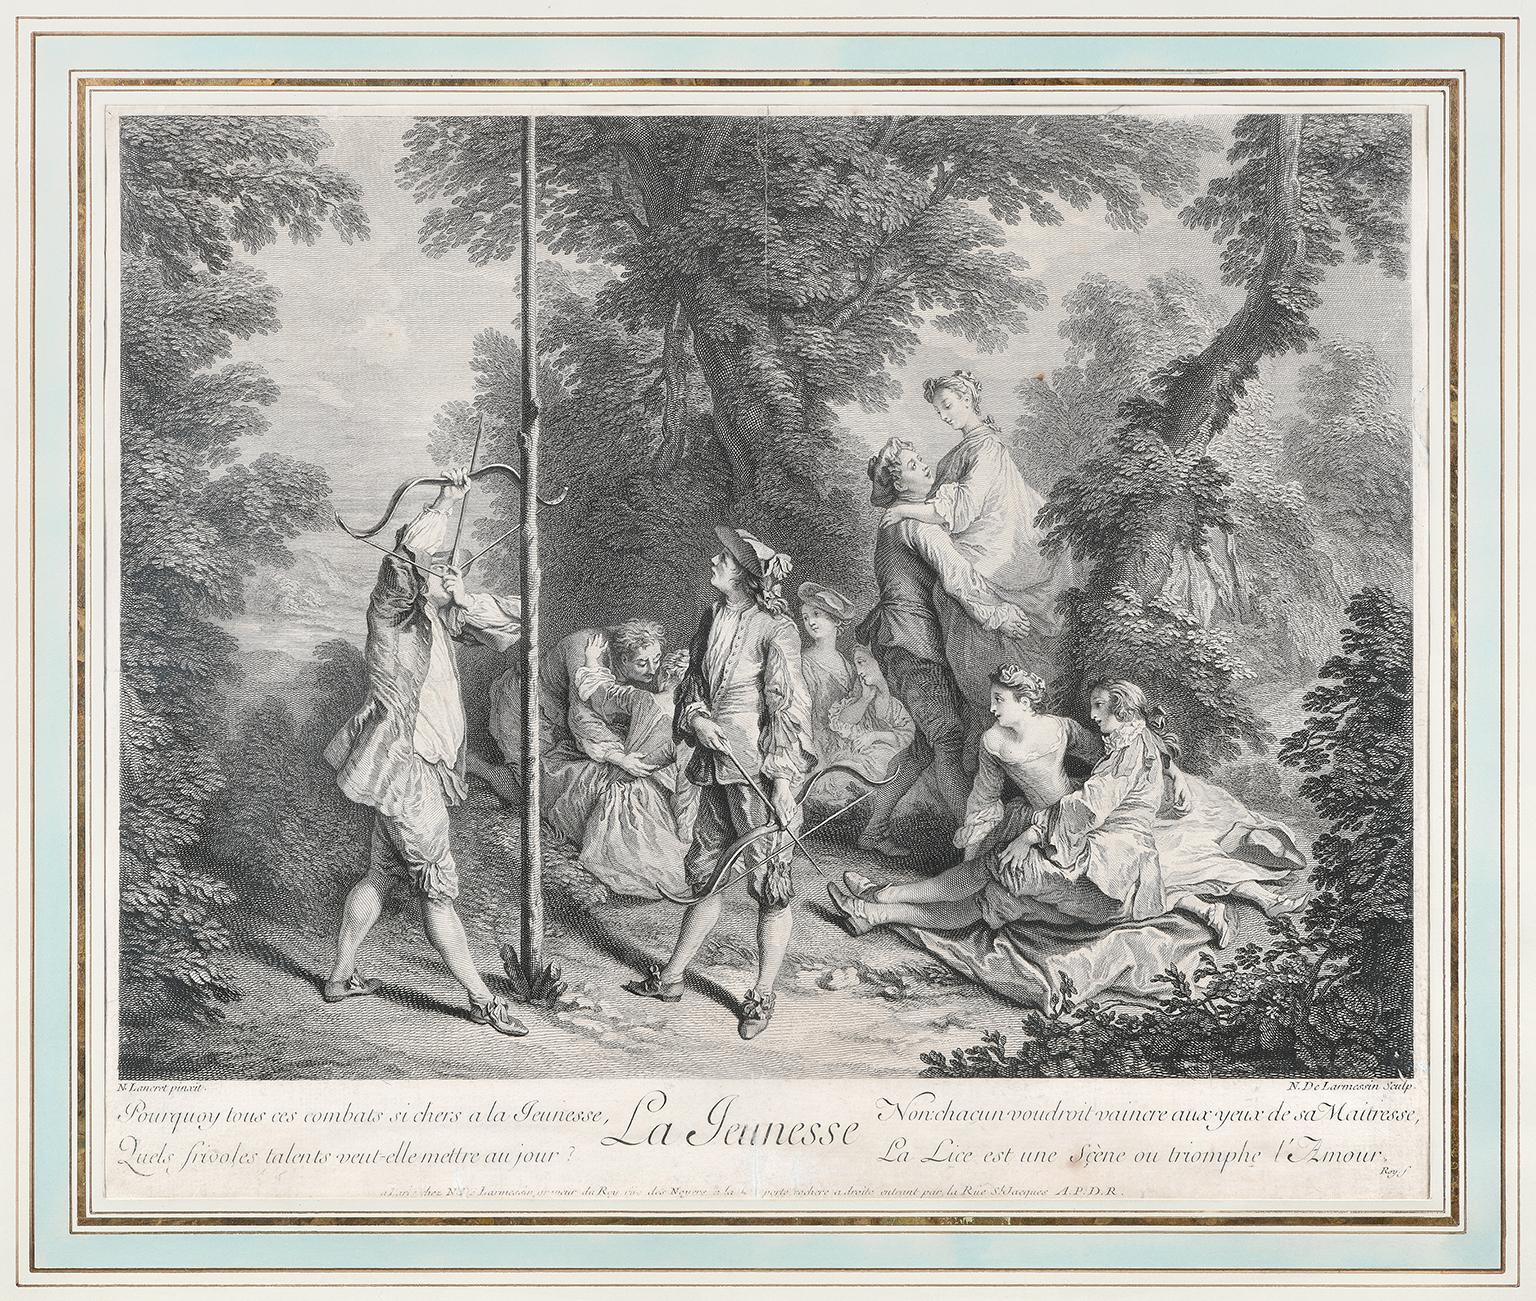 La Jeunesse
Tapisserie
Laine et soie polychromes
France, Aubusson, vers 1750
Il mesure 272 cm de hauteur x 265 cm de profondeur. 
Etat de conservation : bon
La tapisserie est accompagnée de la gravure dont le sujet a été tiré.
La gravure